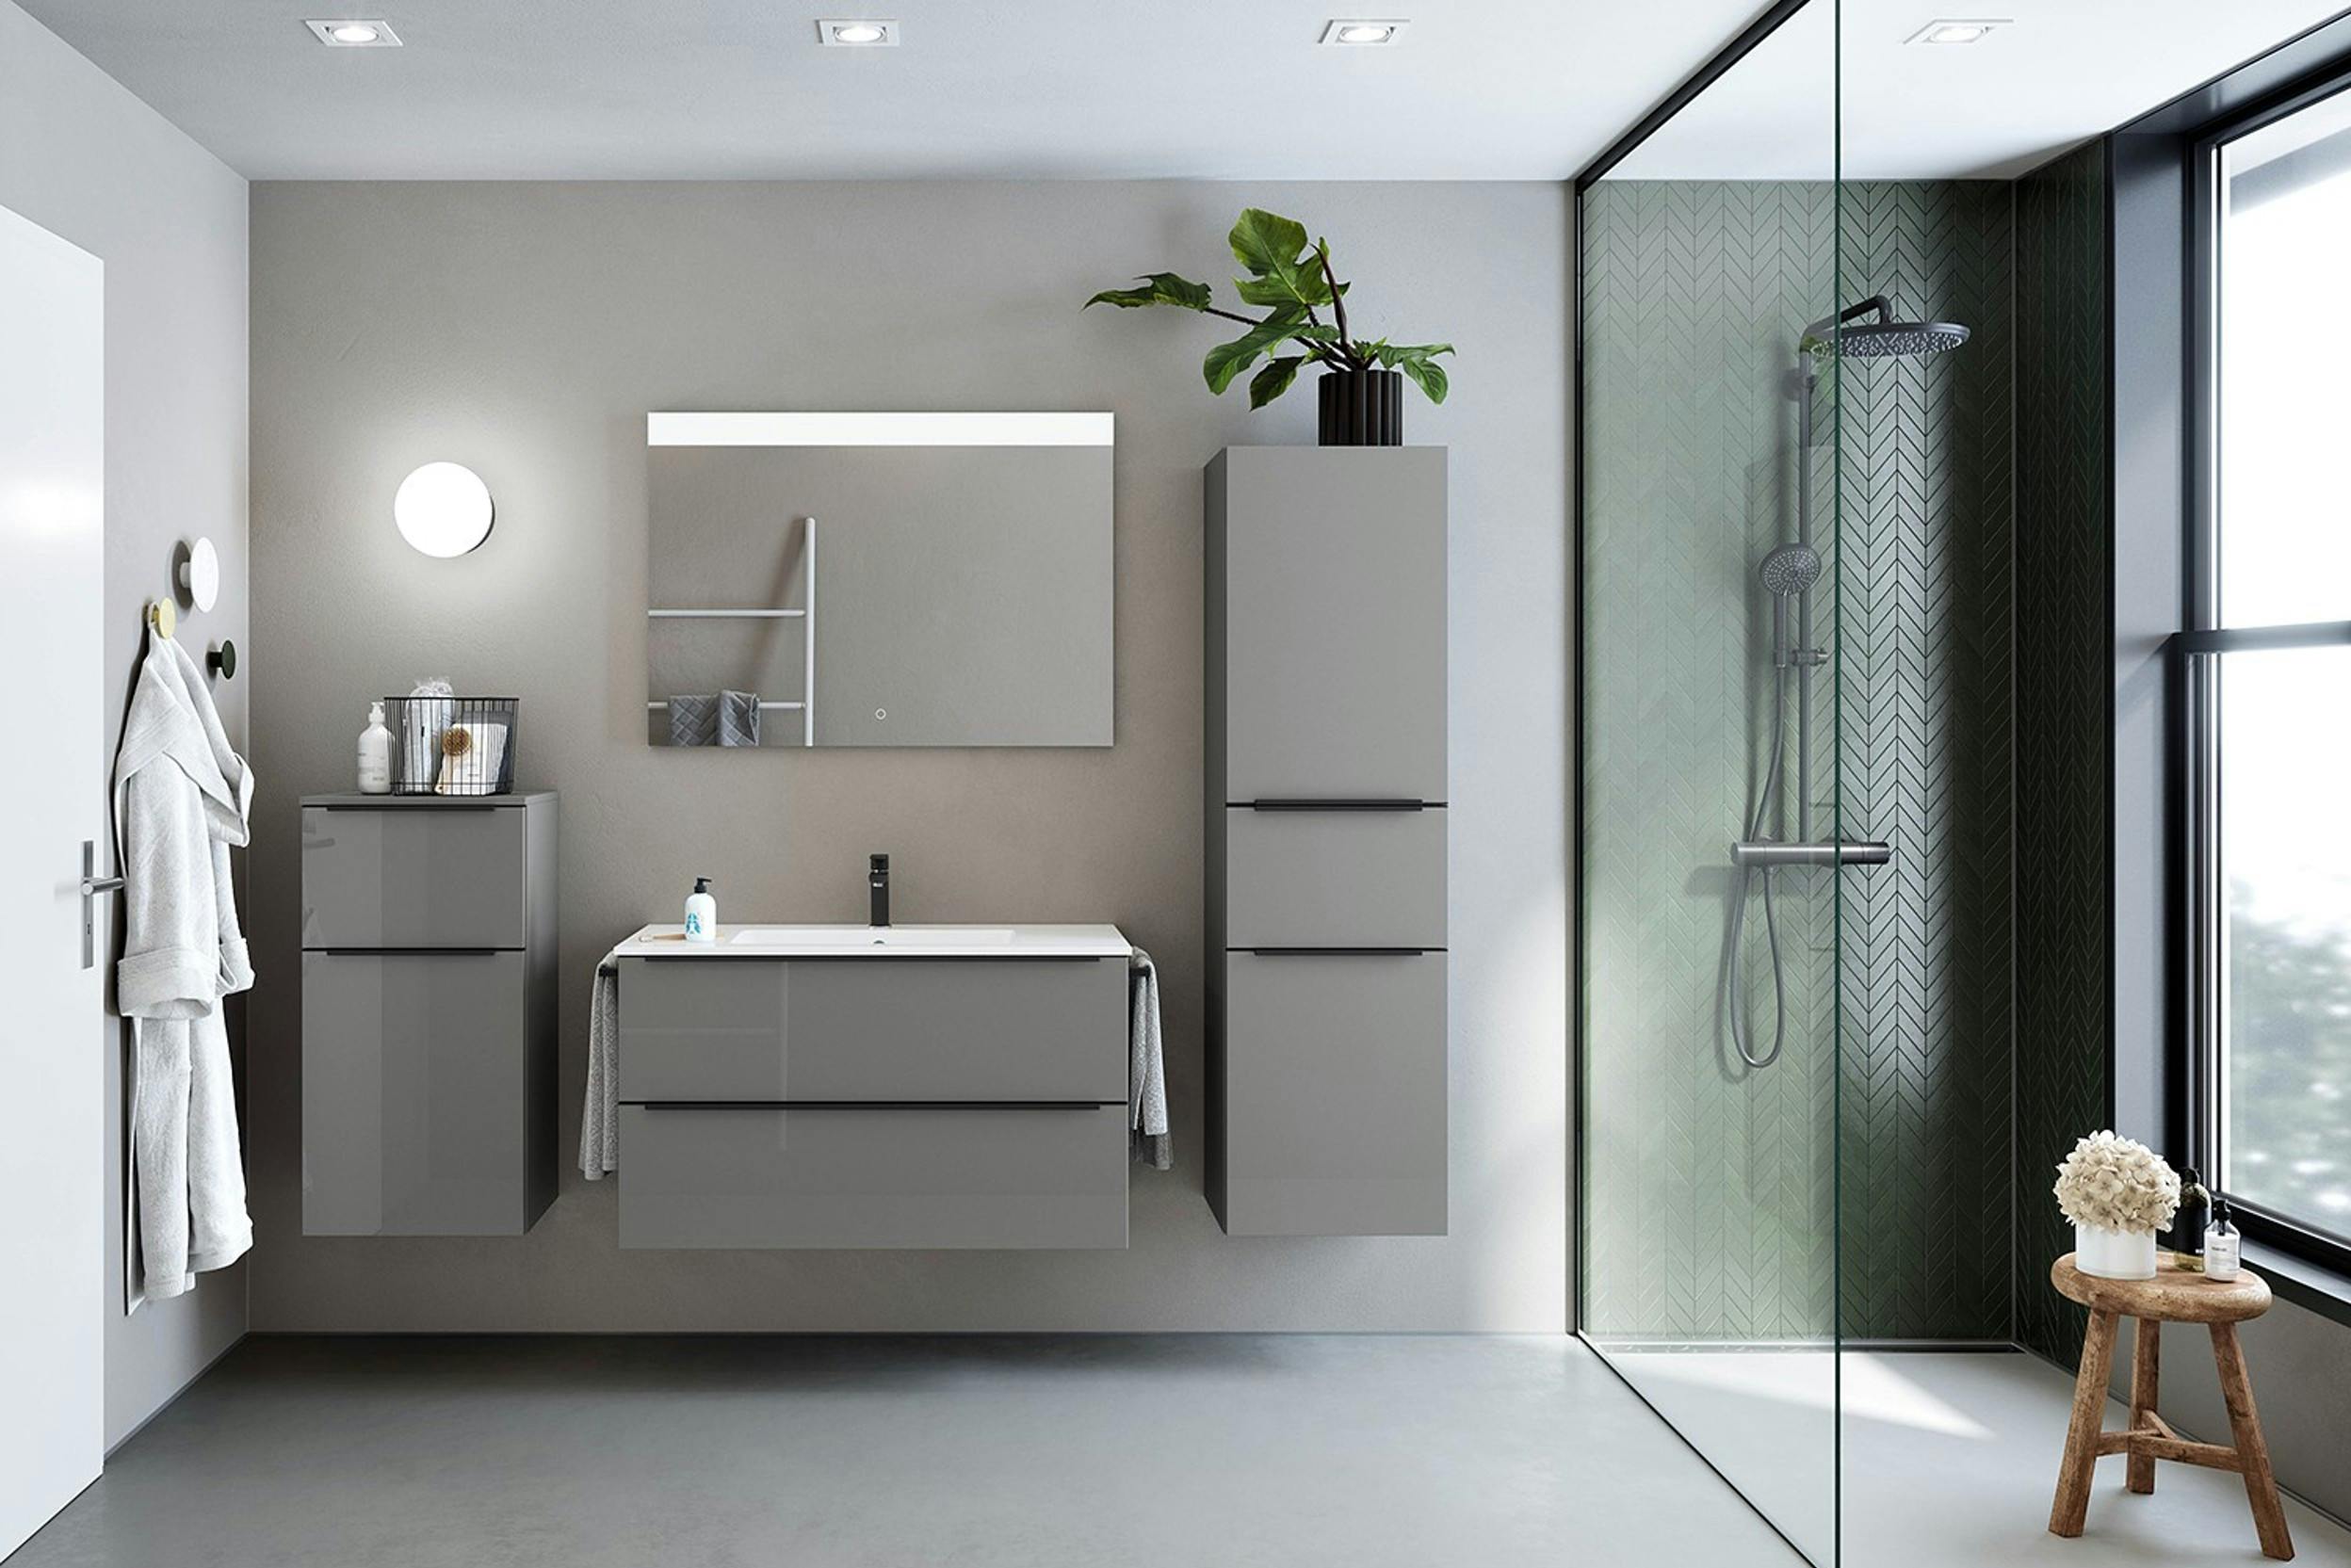 Modernes Bad in Grautönen mit Badspiegel, Deckenspots und Wandleuchte